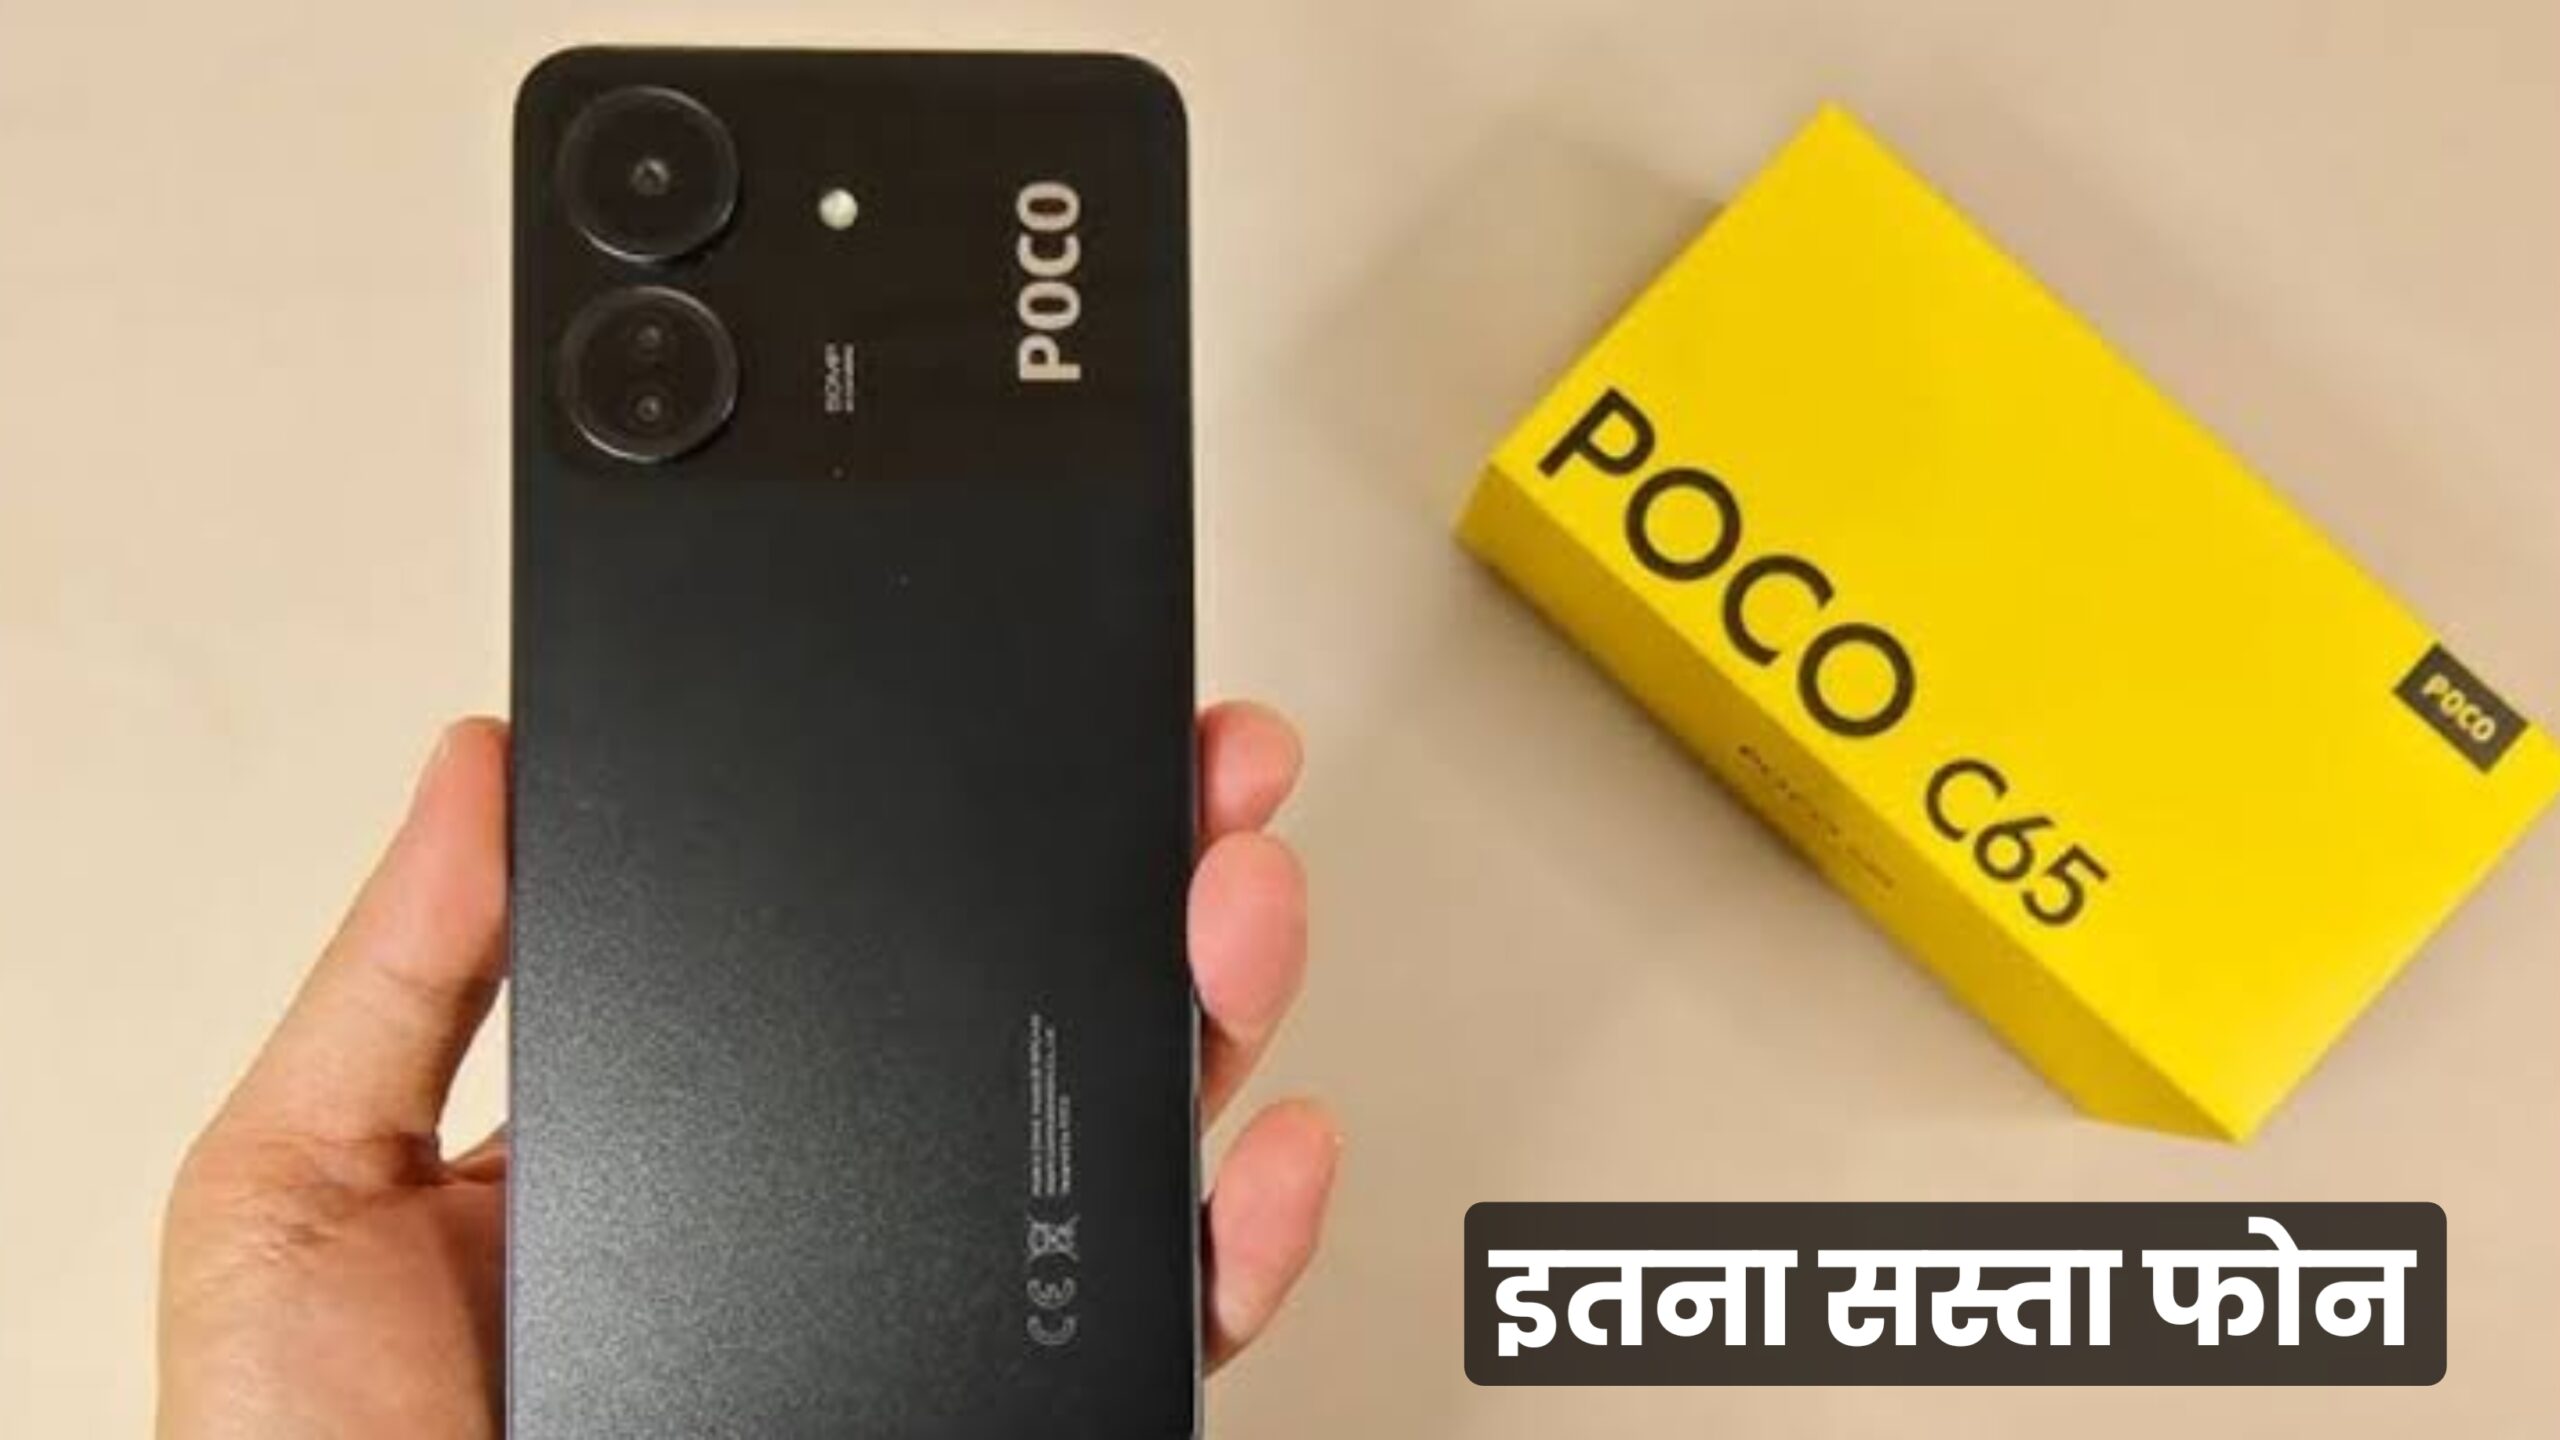 केवल ₹8,999 में 256GB स्टोरेज और धांसू प्रोसेसर… Poco कंपनी ने लॉन्च किया गरीबों के बजट में बेहतरीन स्मार्टफोन, देखें फीचर्स